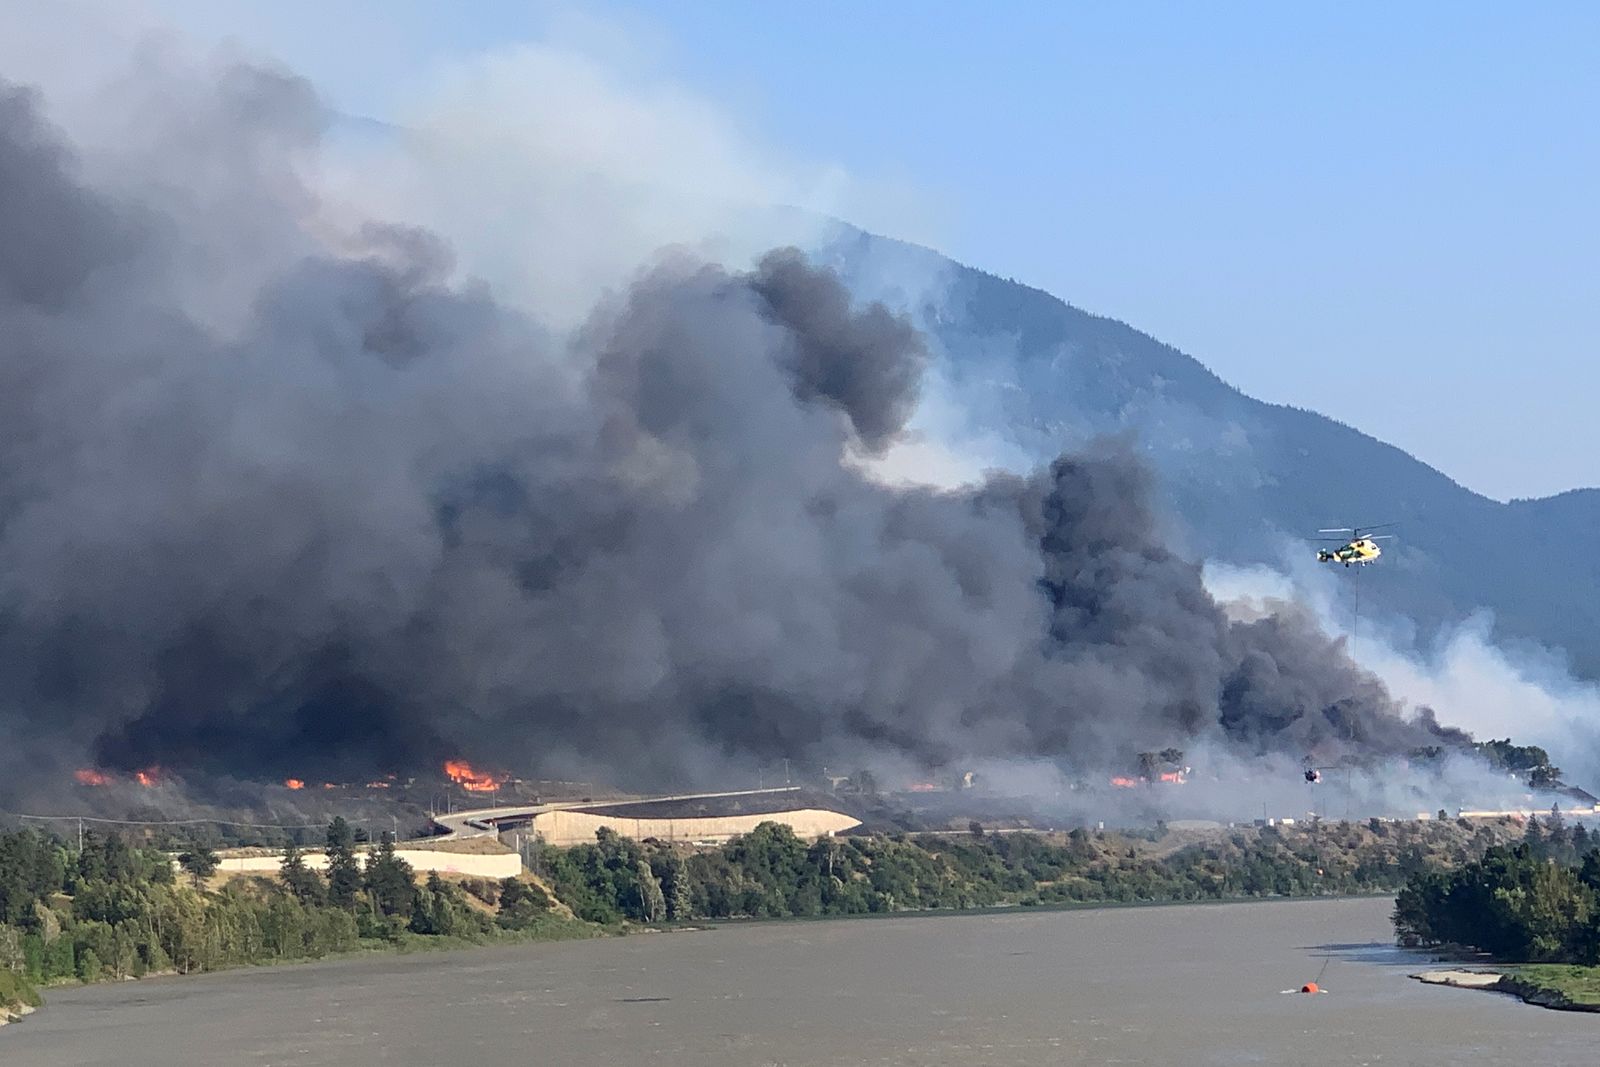 دخان يتصاعد فوق بلدة ليتون غرب كندا بعد أن أجبرت حرائق الغابات سكانها على الإخلاء. 10-07-2021 - via REUTERS